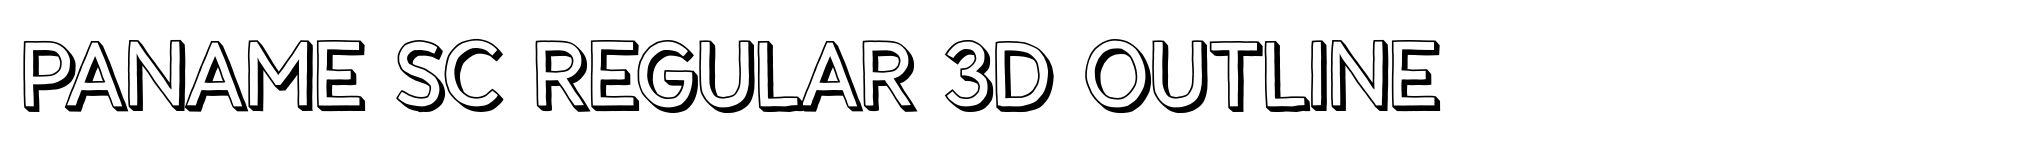 Paname SC Regular 3D Outline image